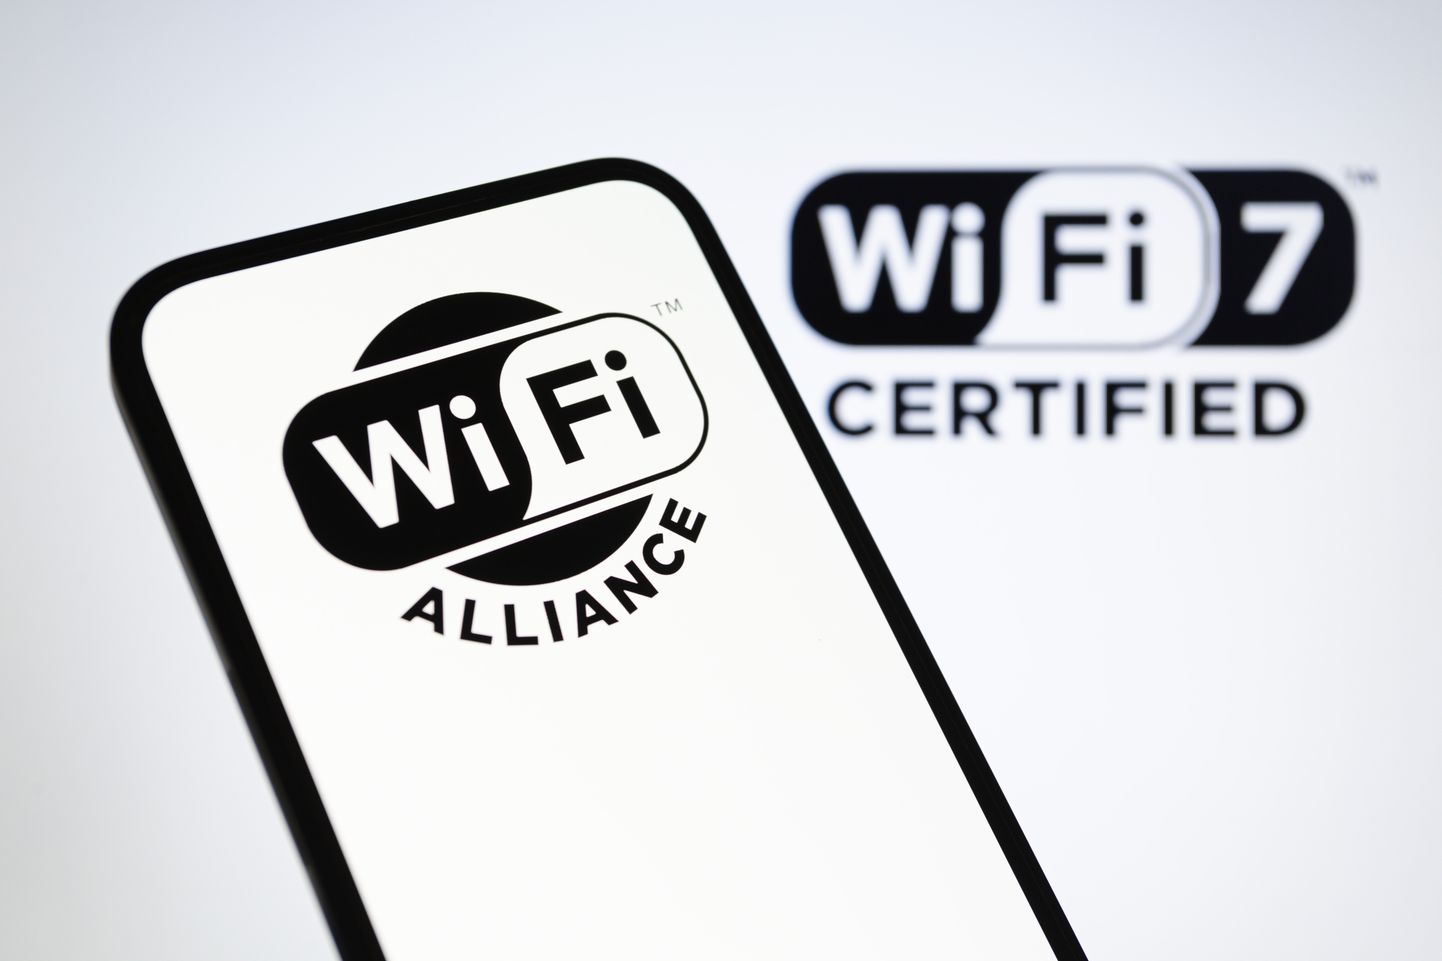 Wi-Fi Alliance´i logo hakkavad kandma kõik uued seadmed, mis suudavad uues kuni 46 Gbit/s traadita võrgus olla ja selle uusimaid võimalusi kasutada. Vanad seadmed saavad samuti uue võrguga ühenduse, kuid ei saa selle parimaid omadusi ära kasutada.